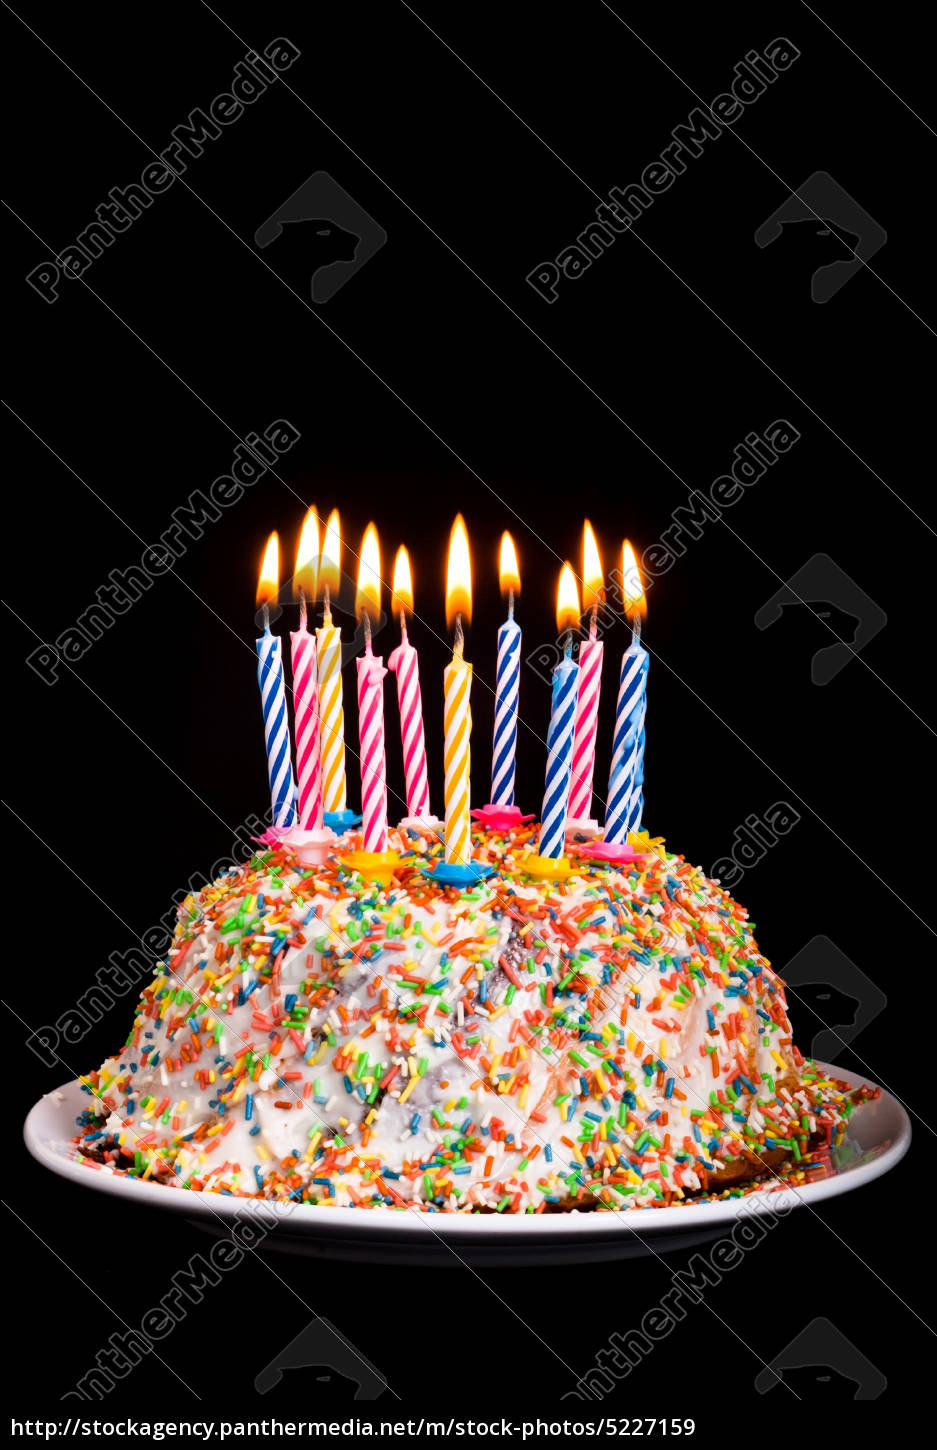 Geburtstagskuchen Mit Kerzen
 Geburtstagskuchen mit Kerzen Lizenzfreies Bild